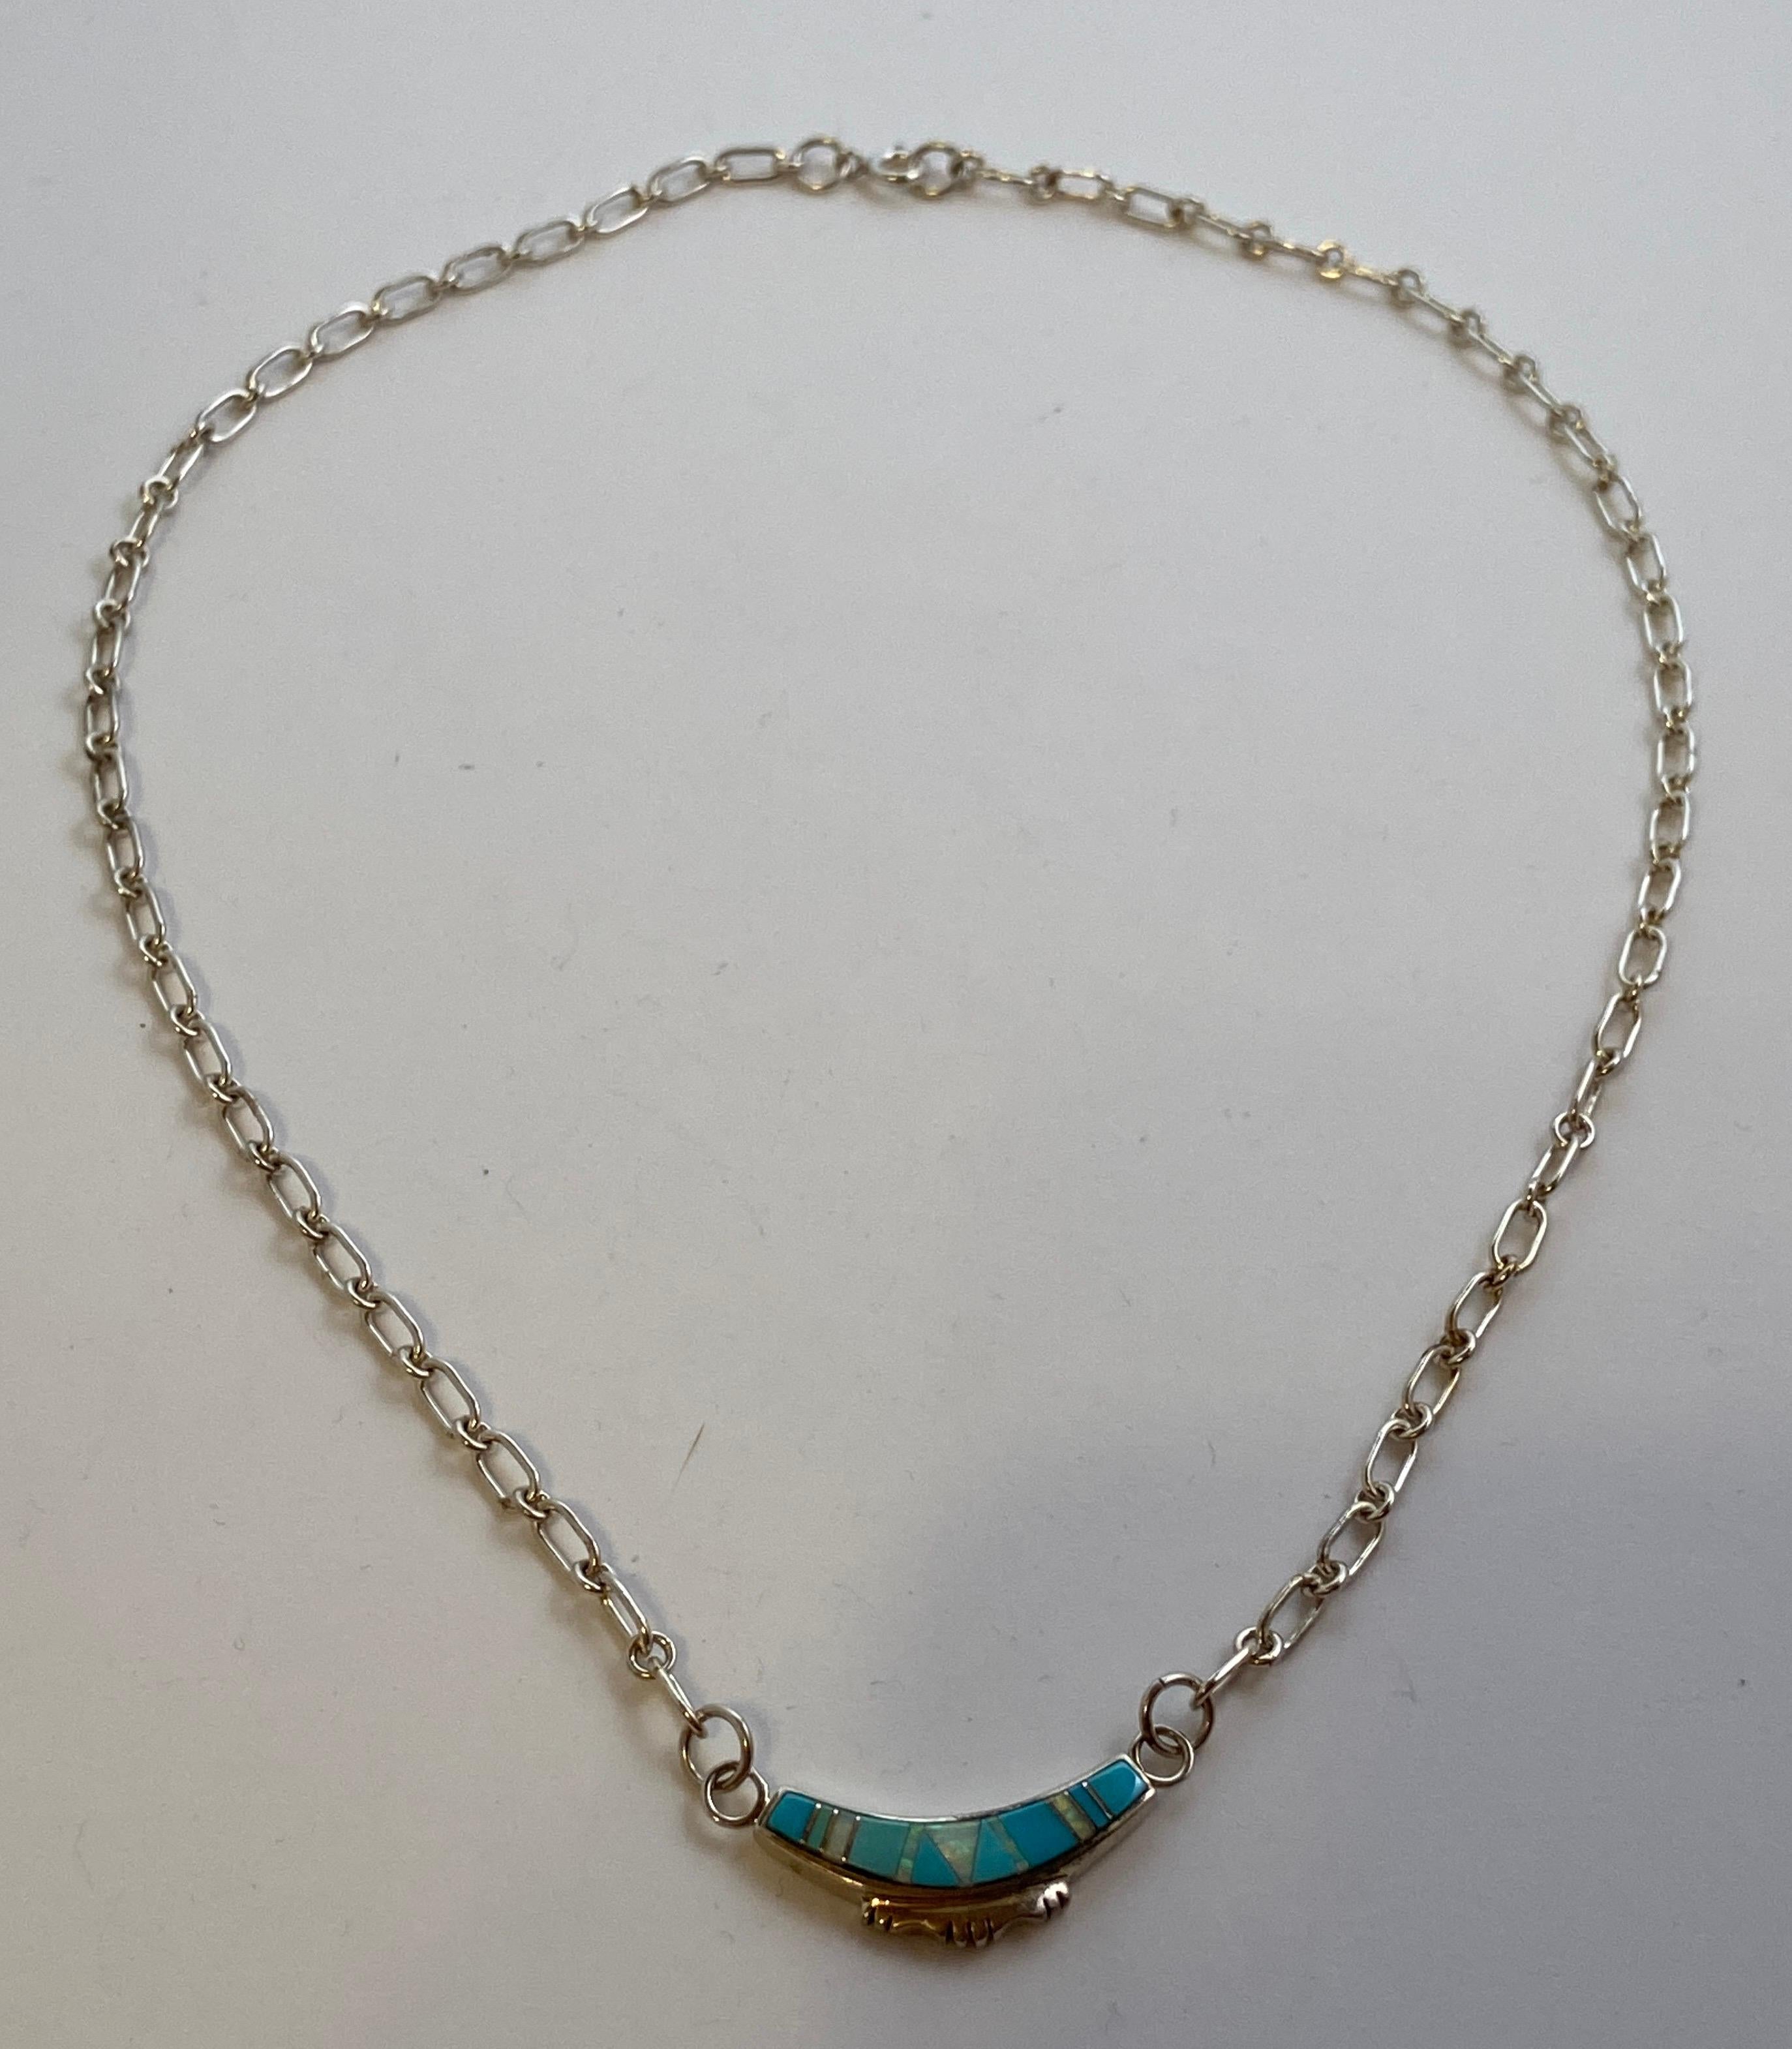 Le collier à maillons en argent sterling est rehaussé d'un pendentif en argent sterling accentué d'opale et de turquoise et d'argent. Le pendentif mesure 1 1/8 pouce par 2/8 de pouce. La longueur totale du collier mesure 18 pouces. Fabriqué aux